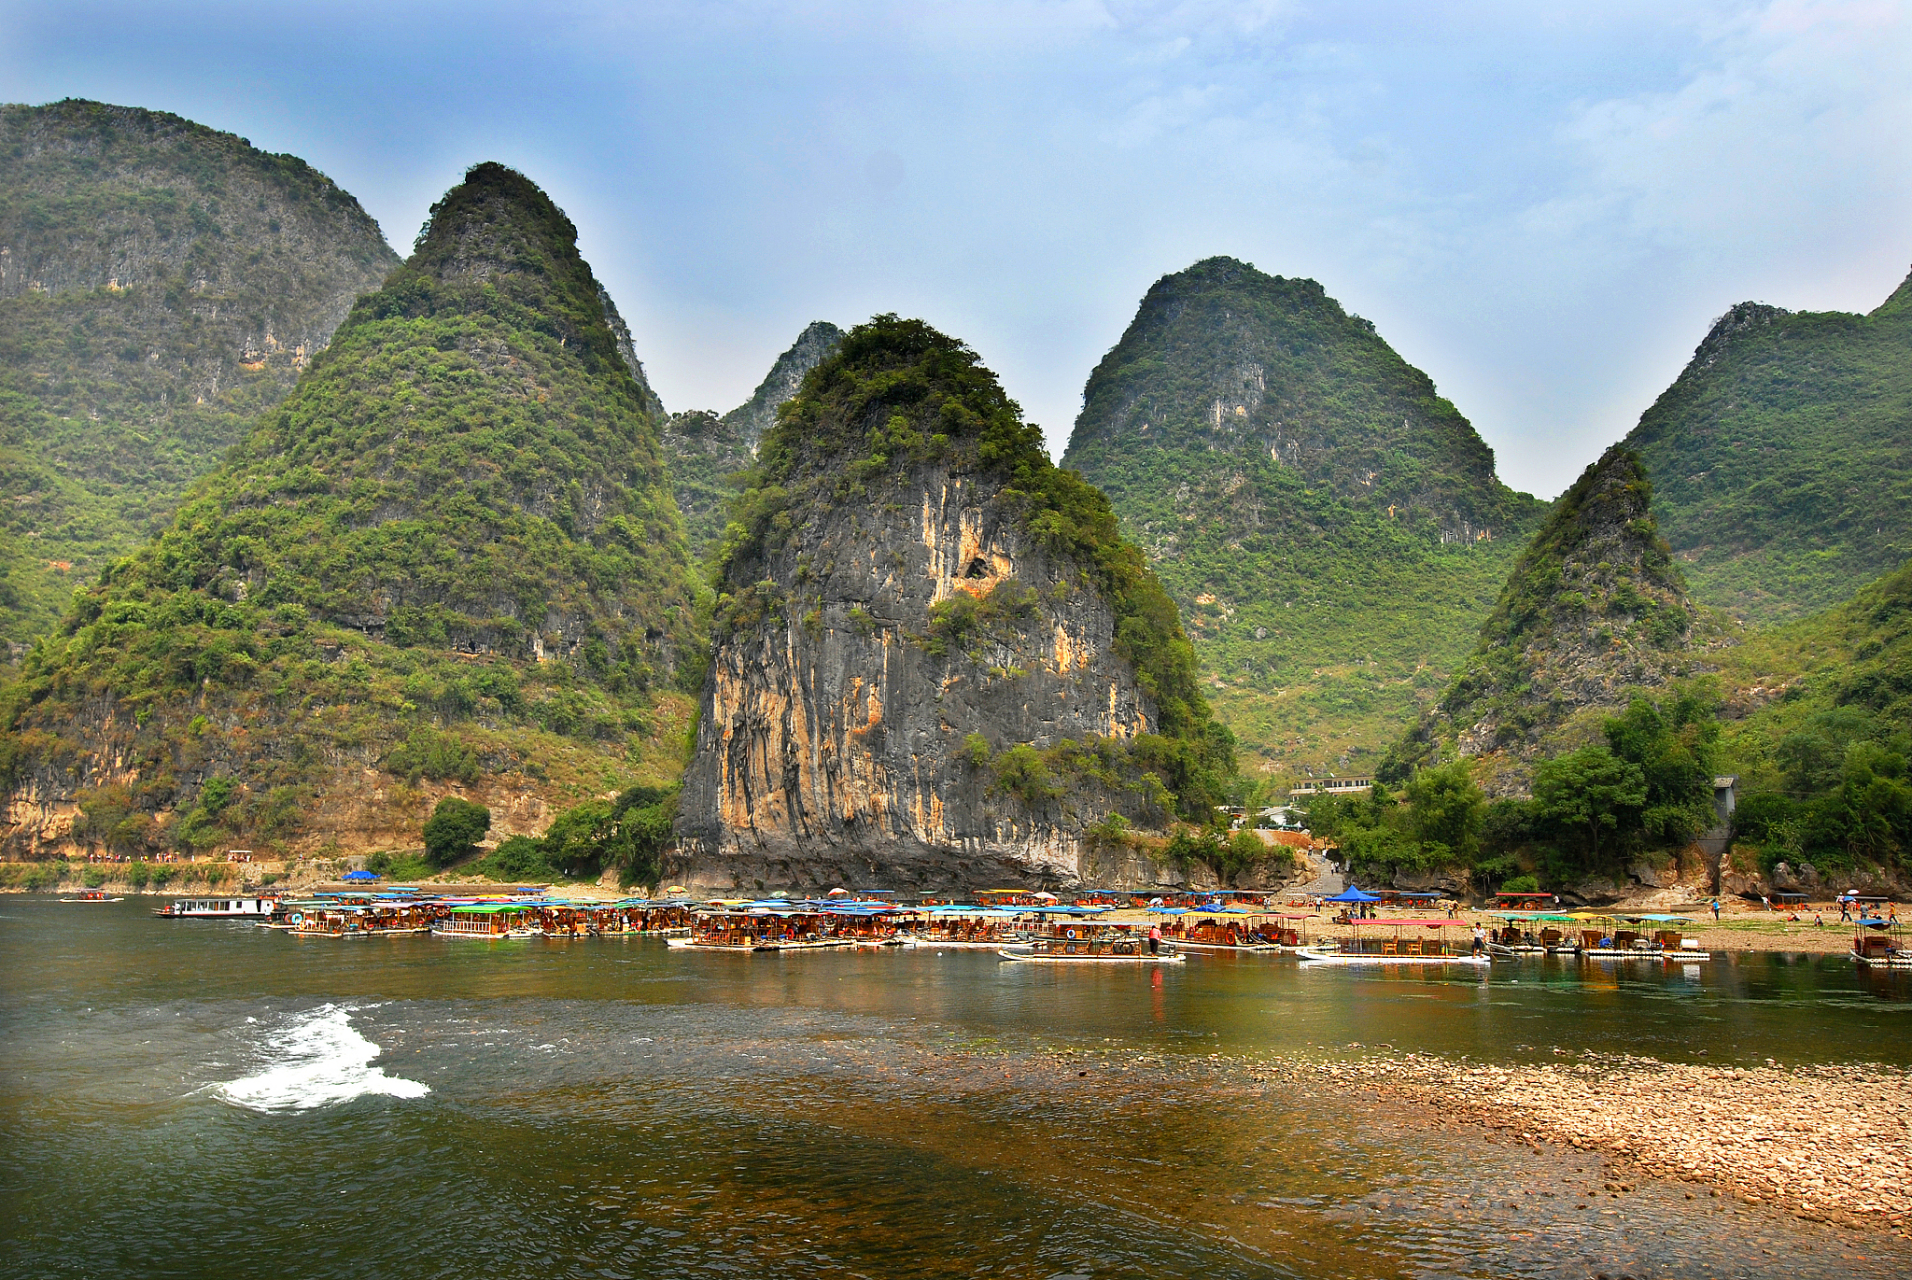 广西拥有丰富的自然景观和人文历史,是旅游资源丰富的地方